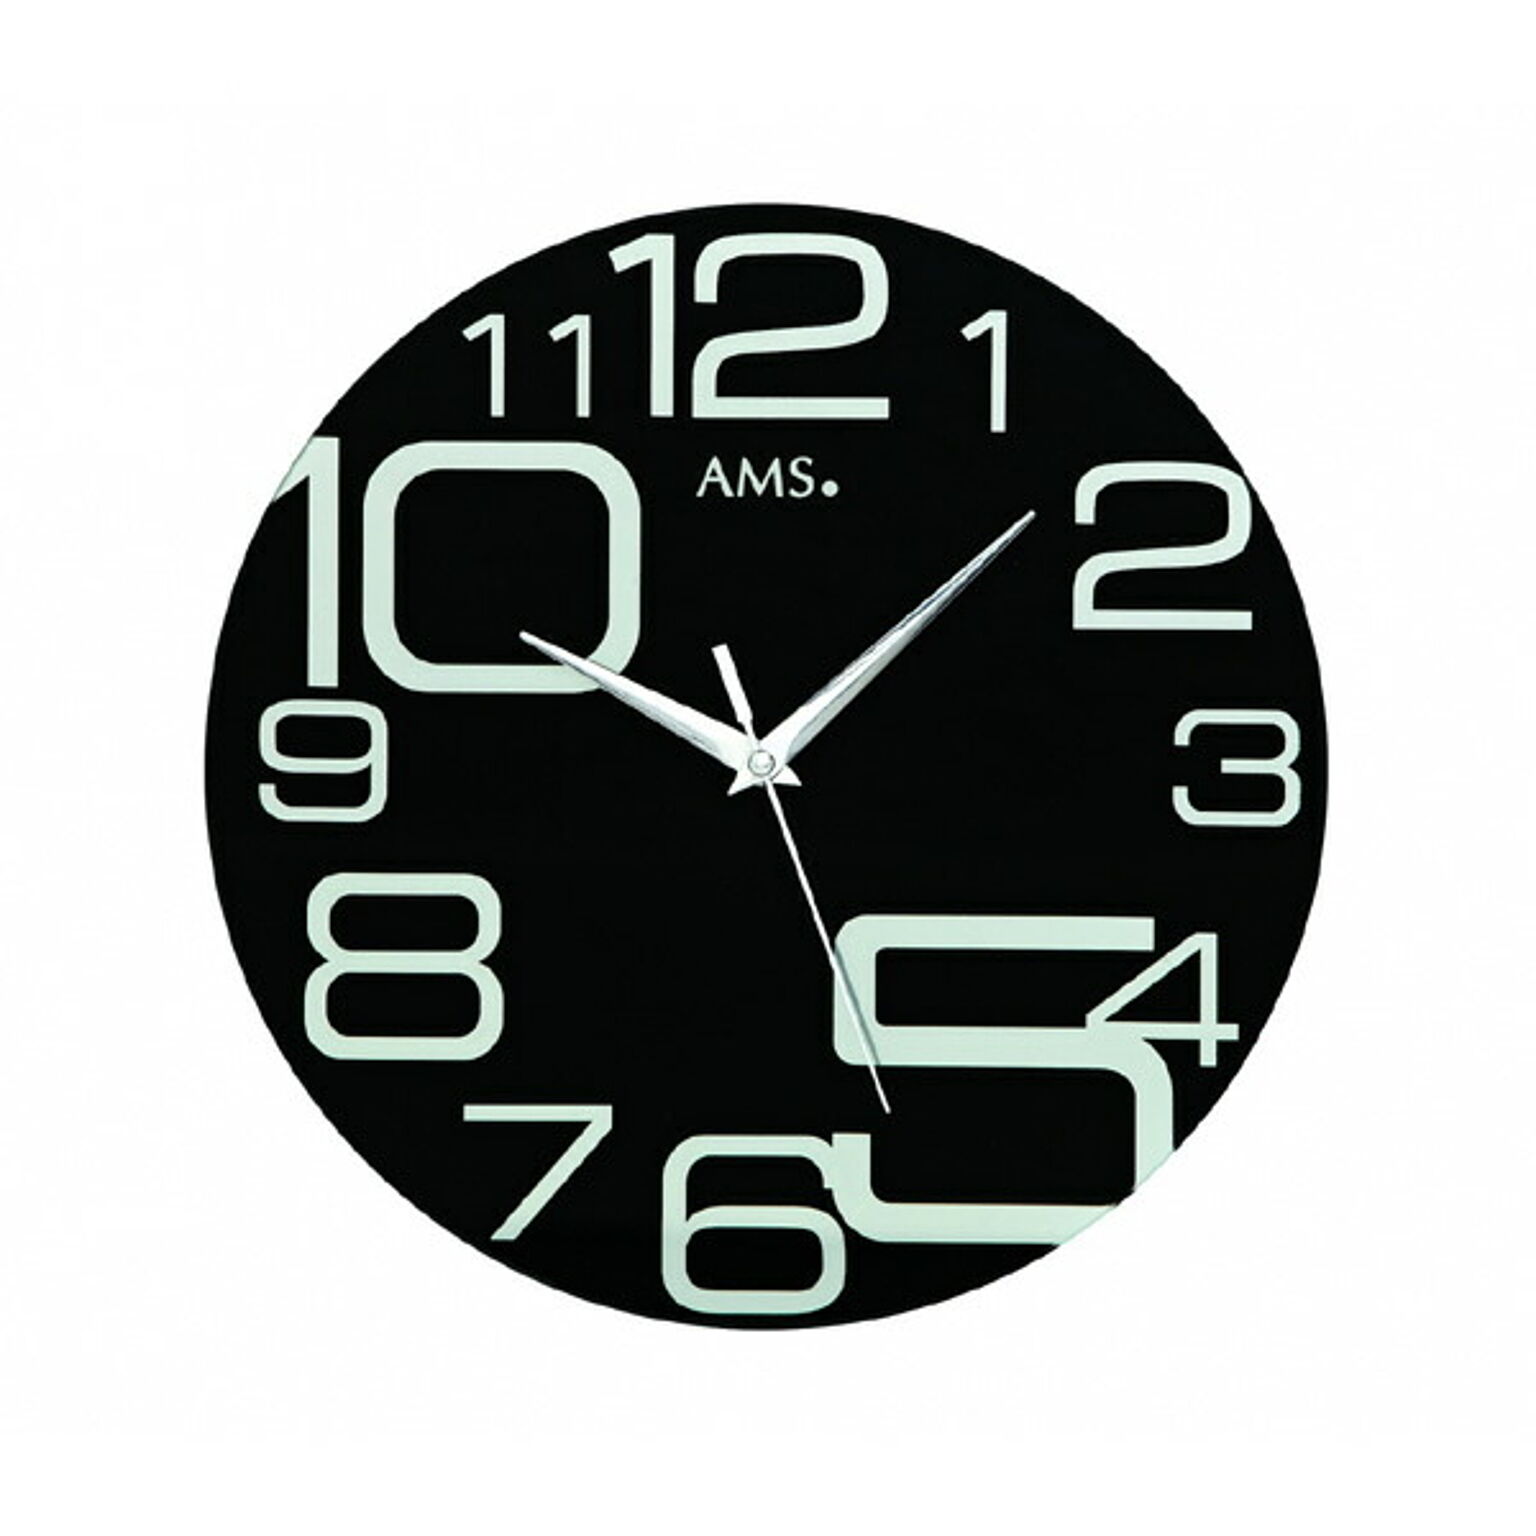 アームス社 AMS 9461 クオーツ 掛け時計 (掛時計) ブラック ドイツ製 【正規輸入品】【メーカー保証2年】